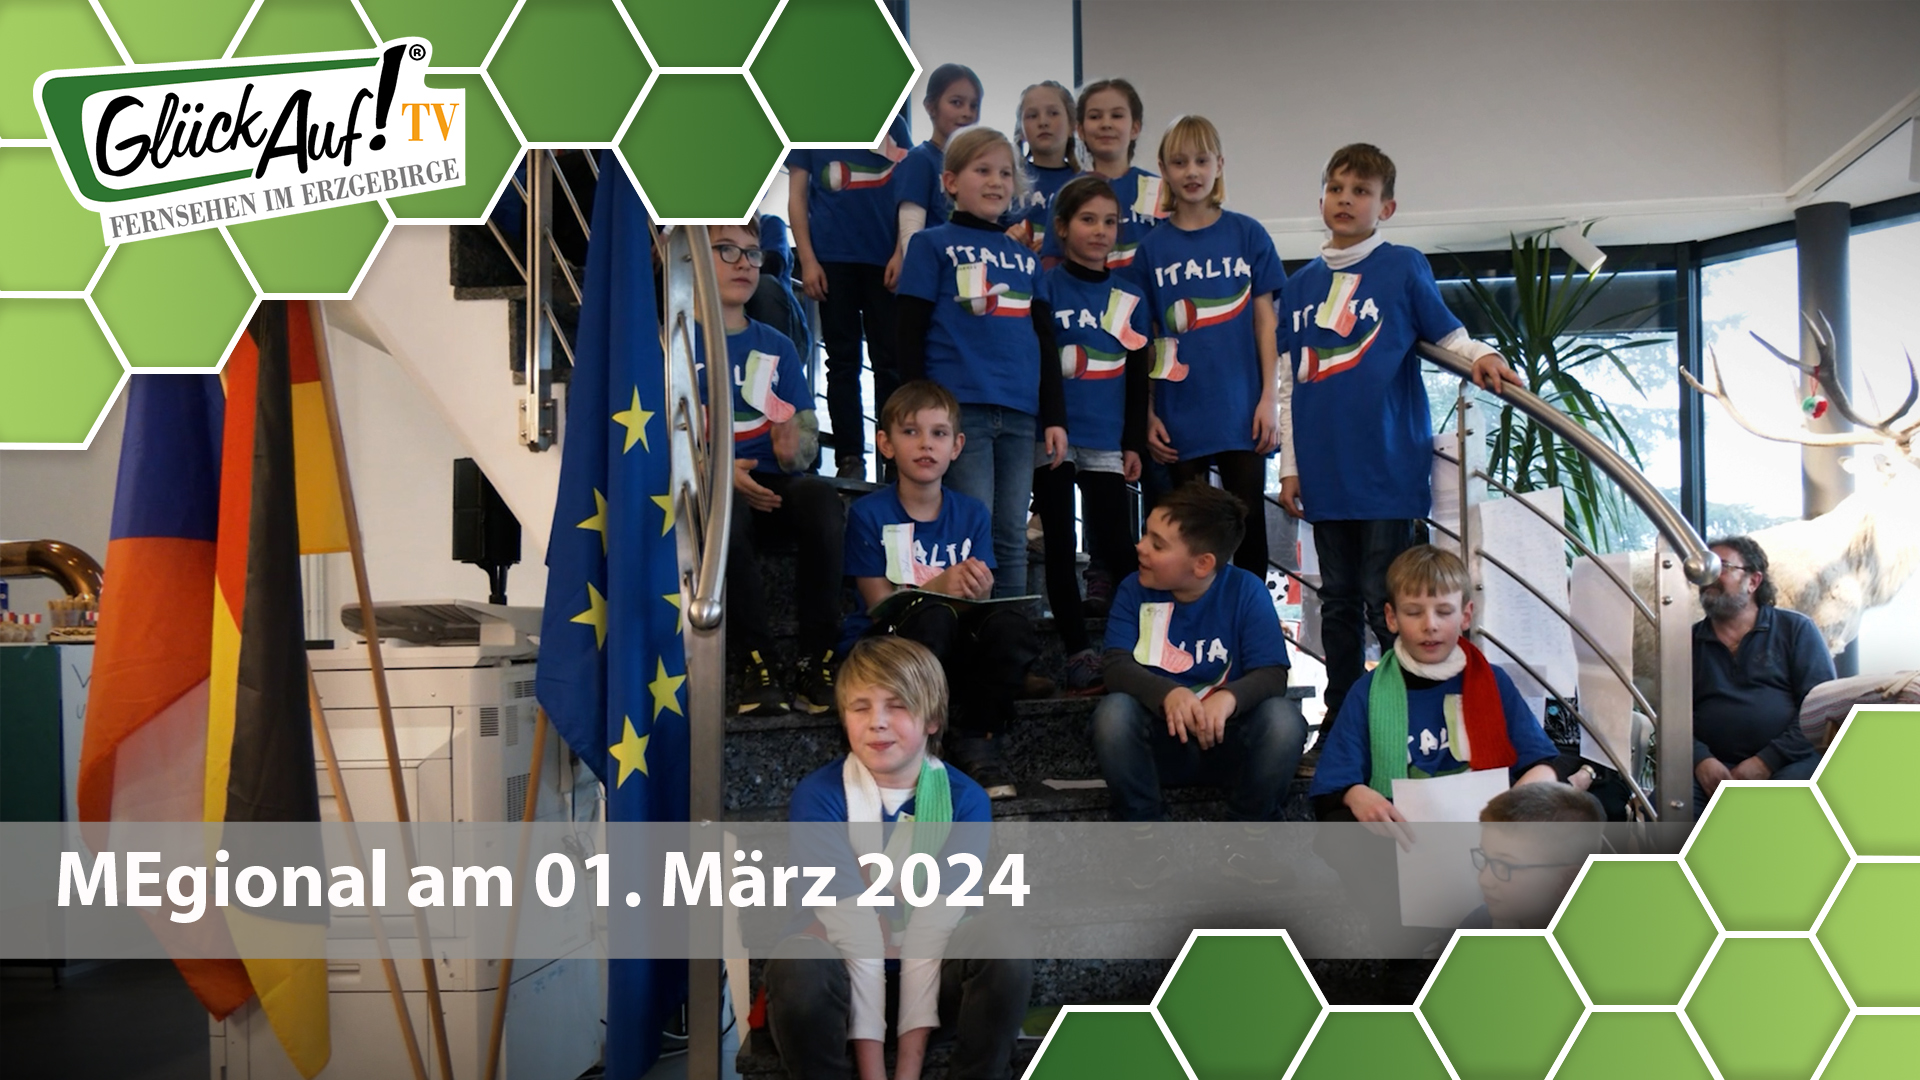 MEgional am 01. März 2024 mit dem EuroKiK Projekt an der Grundschule Großrückerswalde